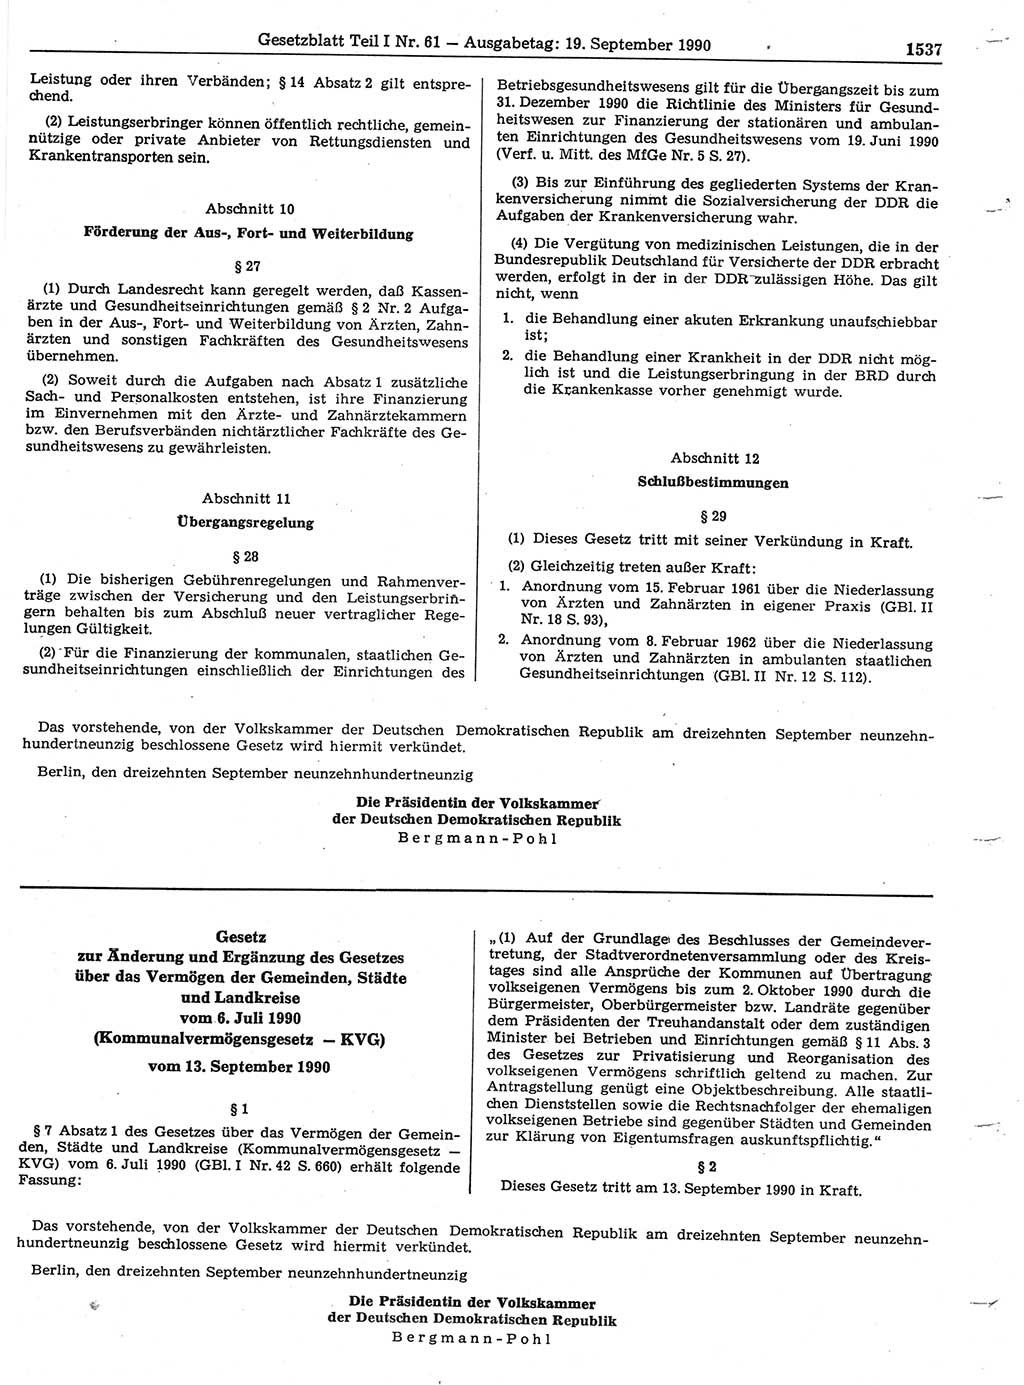 Gesetzblatt (GBl.) der Deutschen Demokratischen Republik (DDR) Teil Ⅰ 1990, Seite 1537 (GBl. DDR Ⅰ 1990, S. 1537)